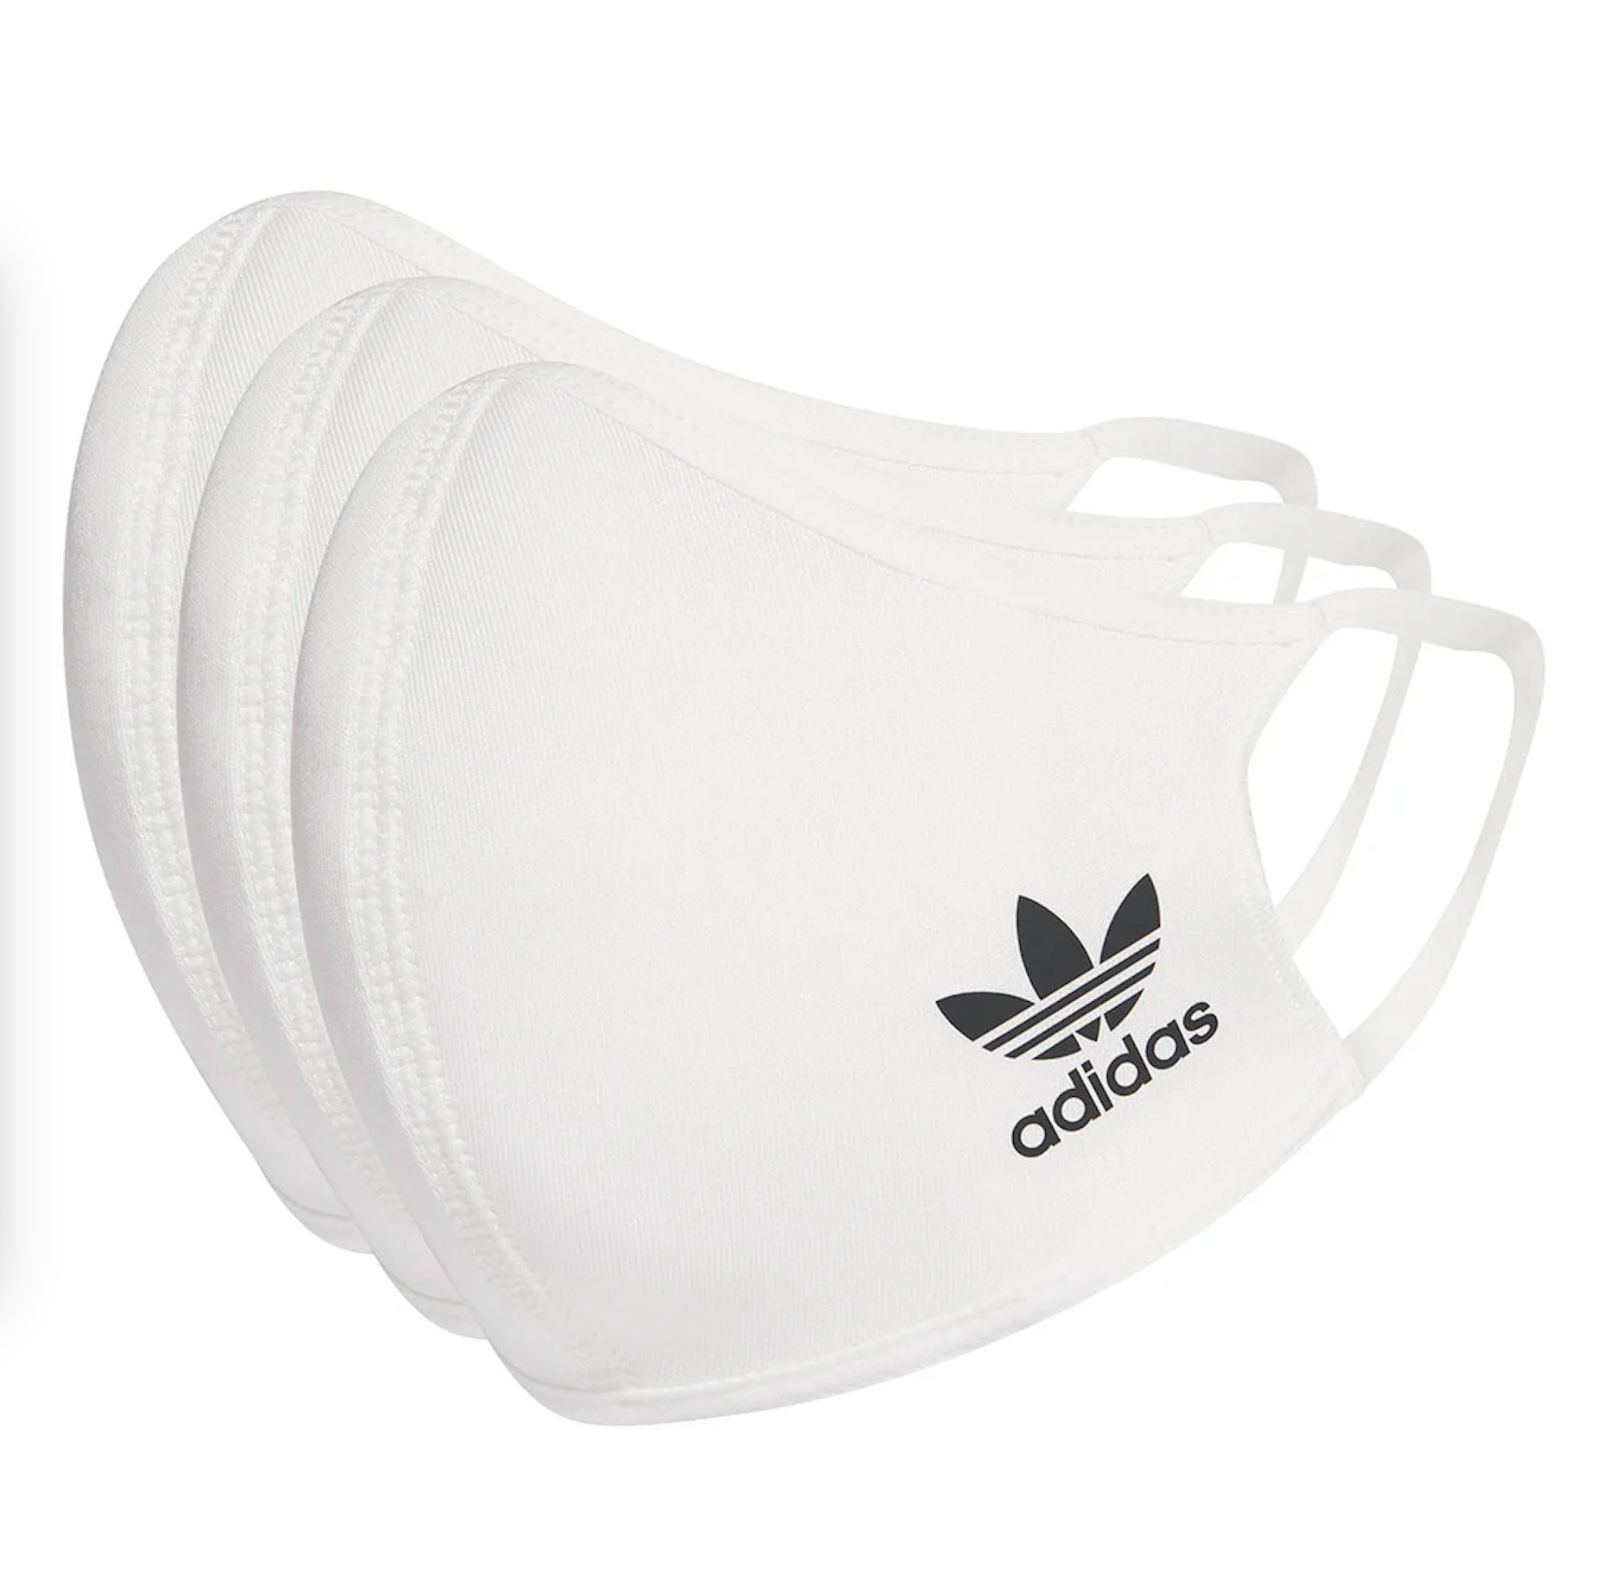 Adidas マスク 白 新品未使用 3枚セット - LSKTストア - メルカリ